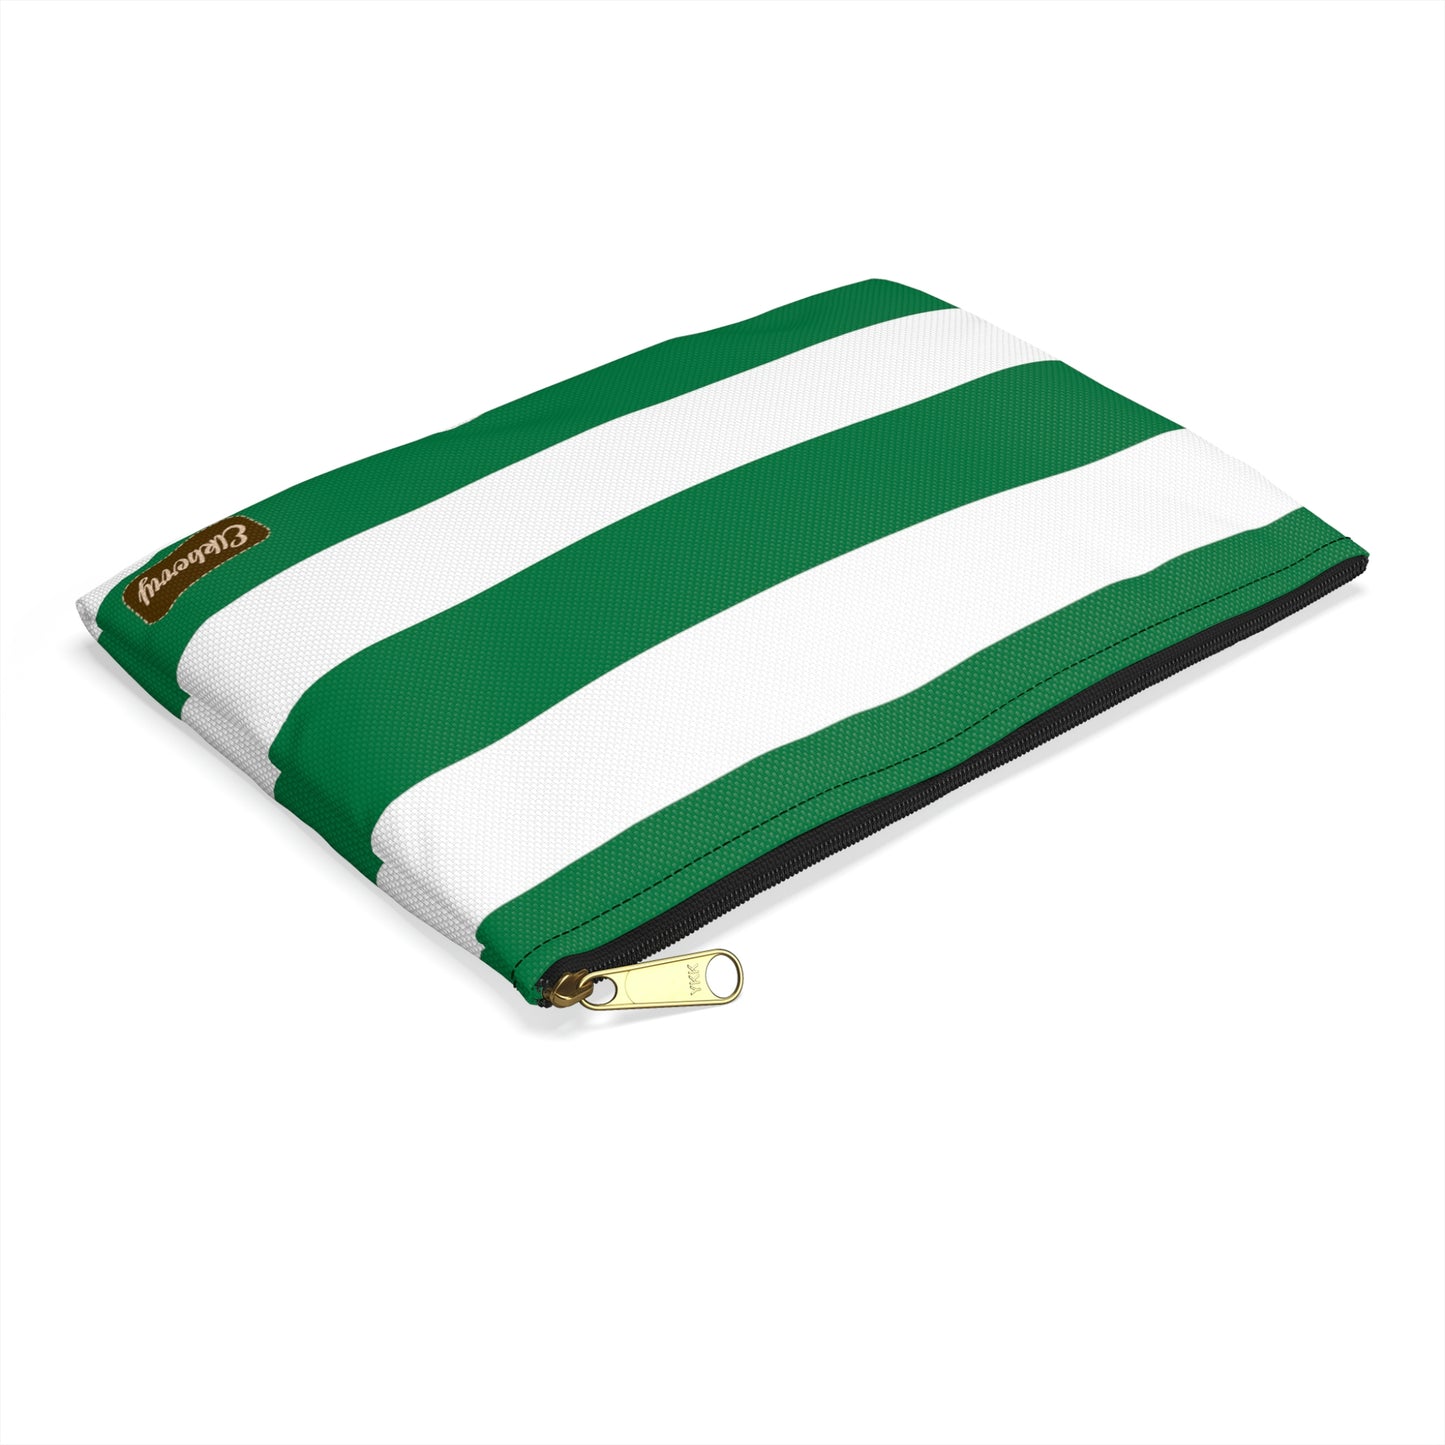 Flat Zipper Pouch - Kelly Green/White Stripes